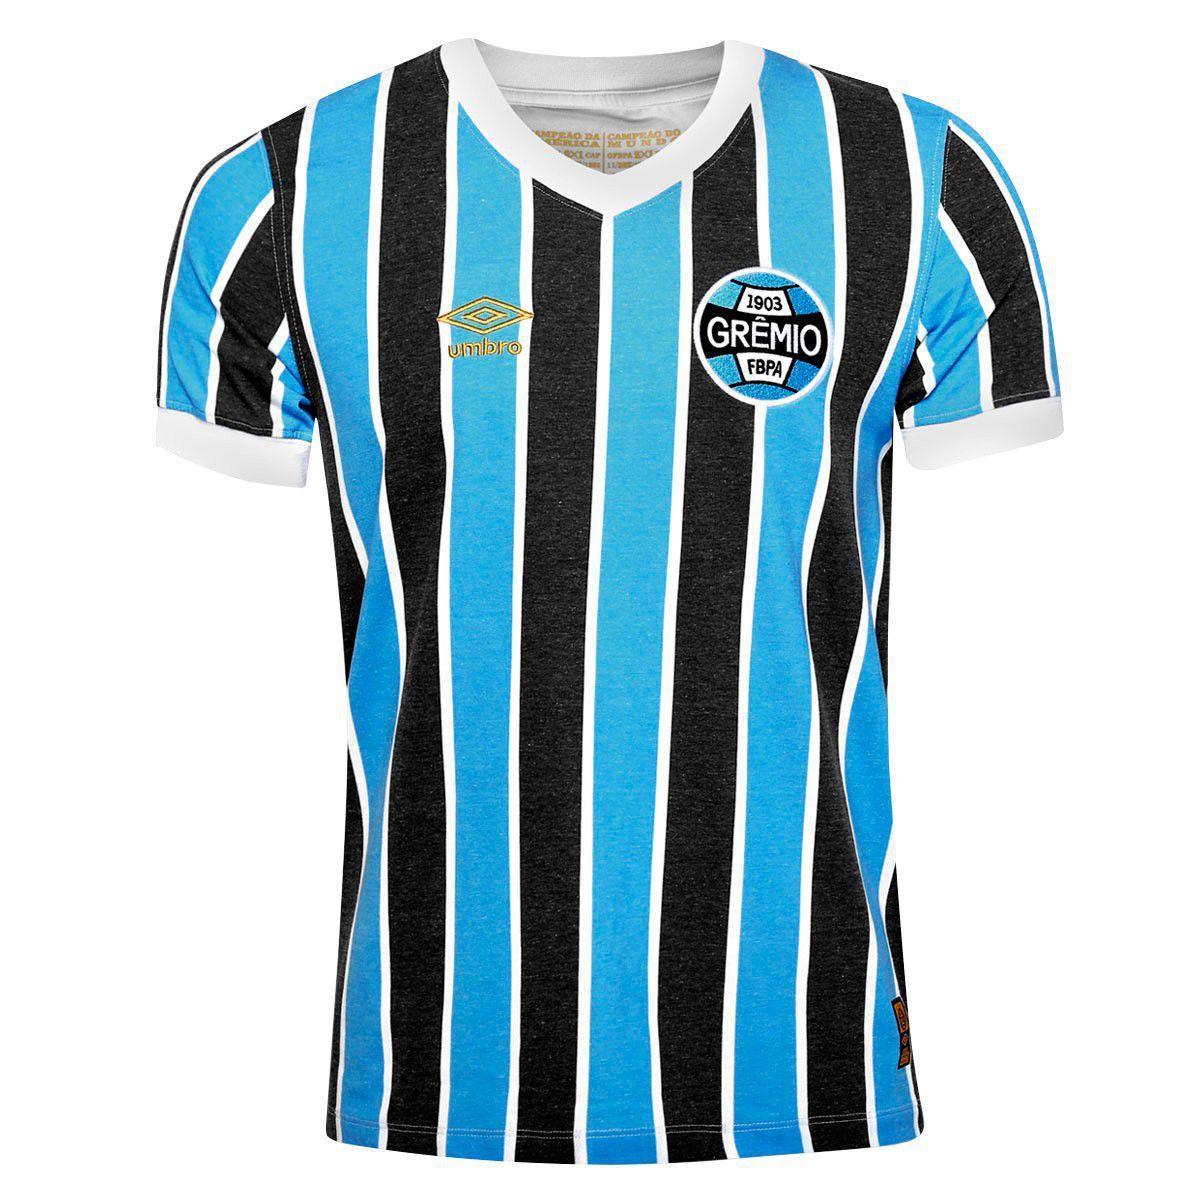 estimular Vacilar idea Camisa Umbro Grêmio Retrô 1983 - Camisa de Time - Magazine Luiza